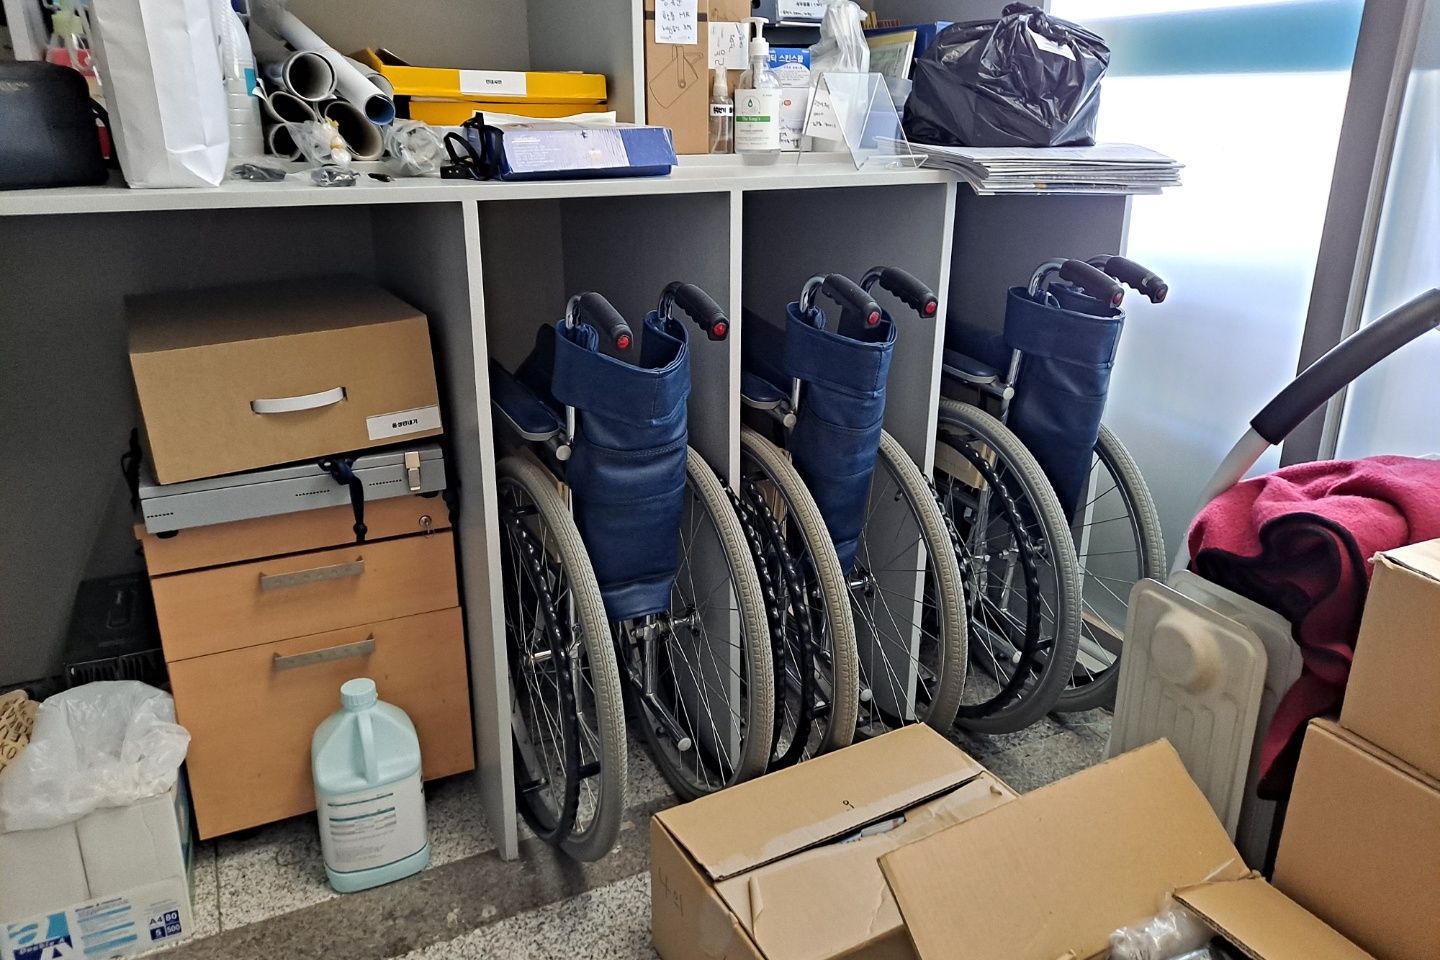 안내데스크/안내판0 : 백범김구기념관 내부에 구비된 휠체어 대여소